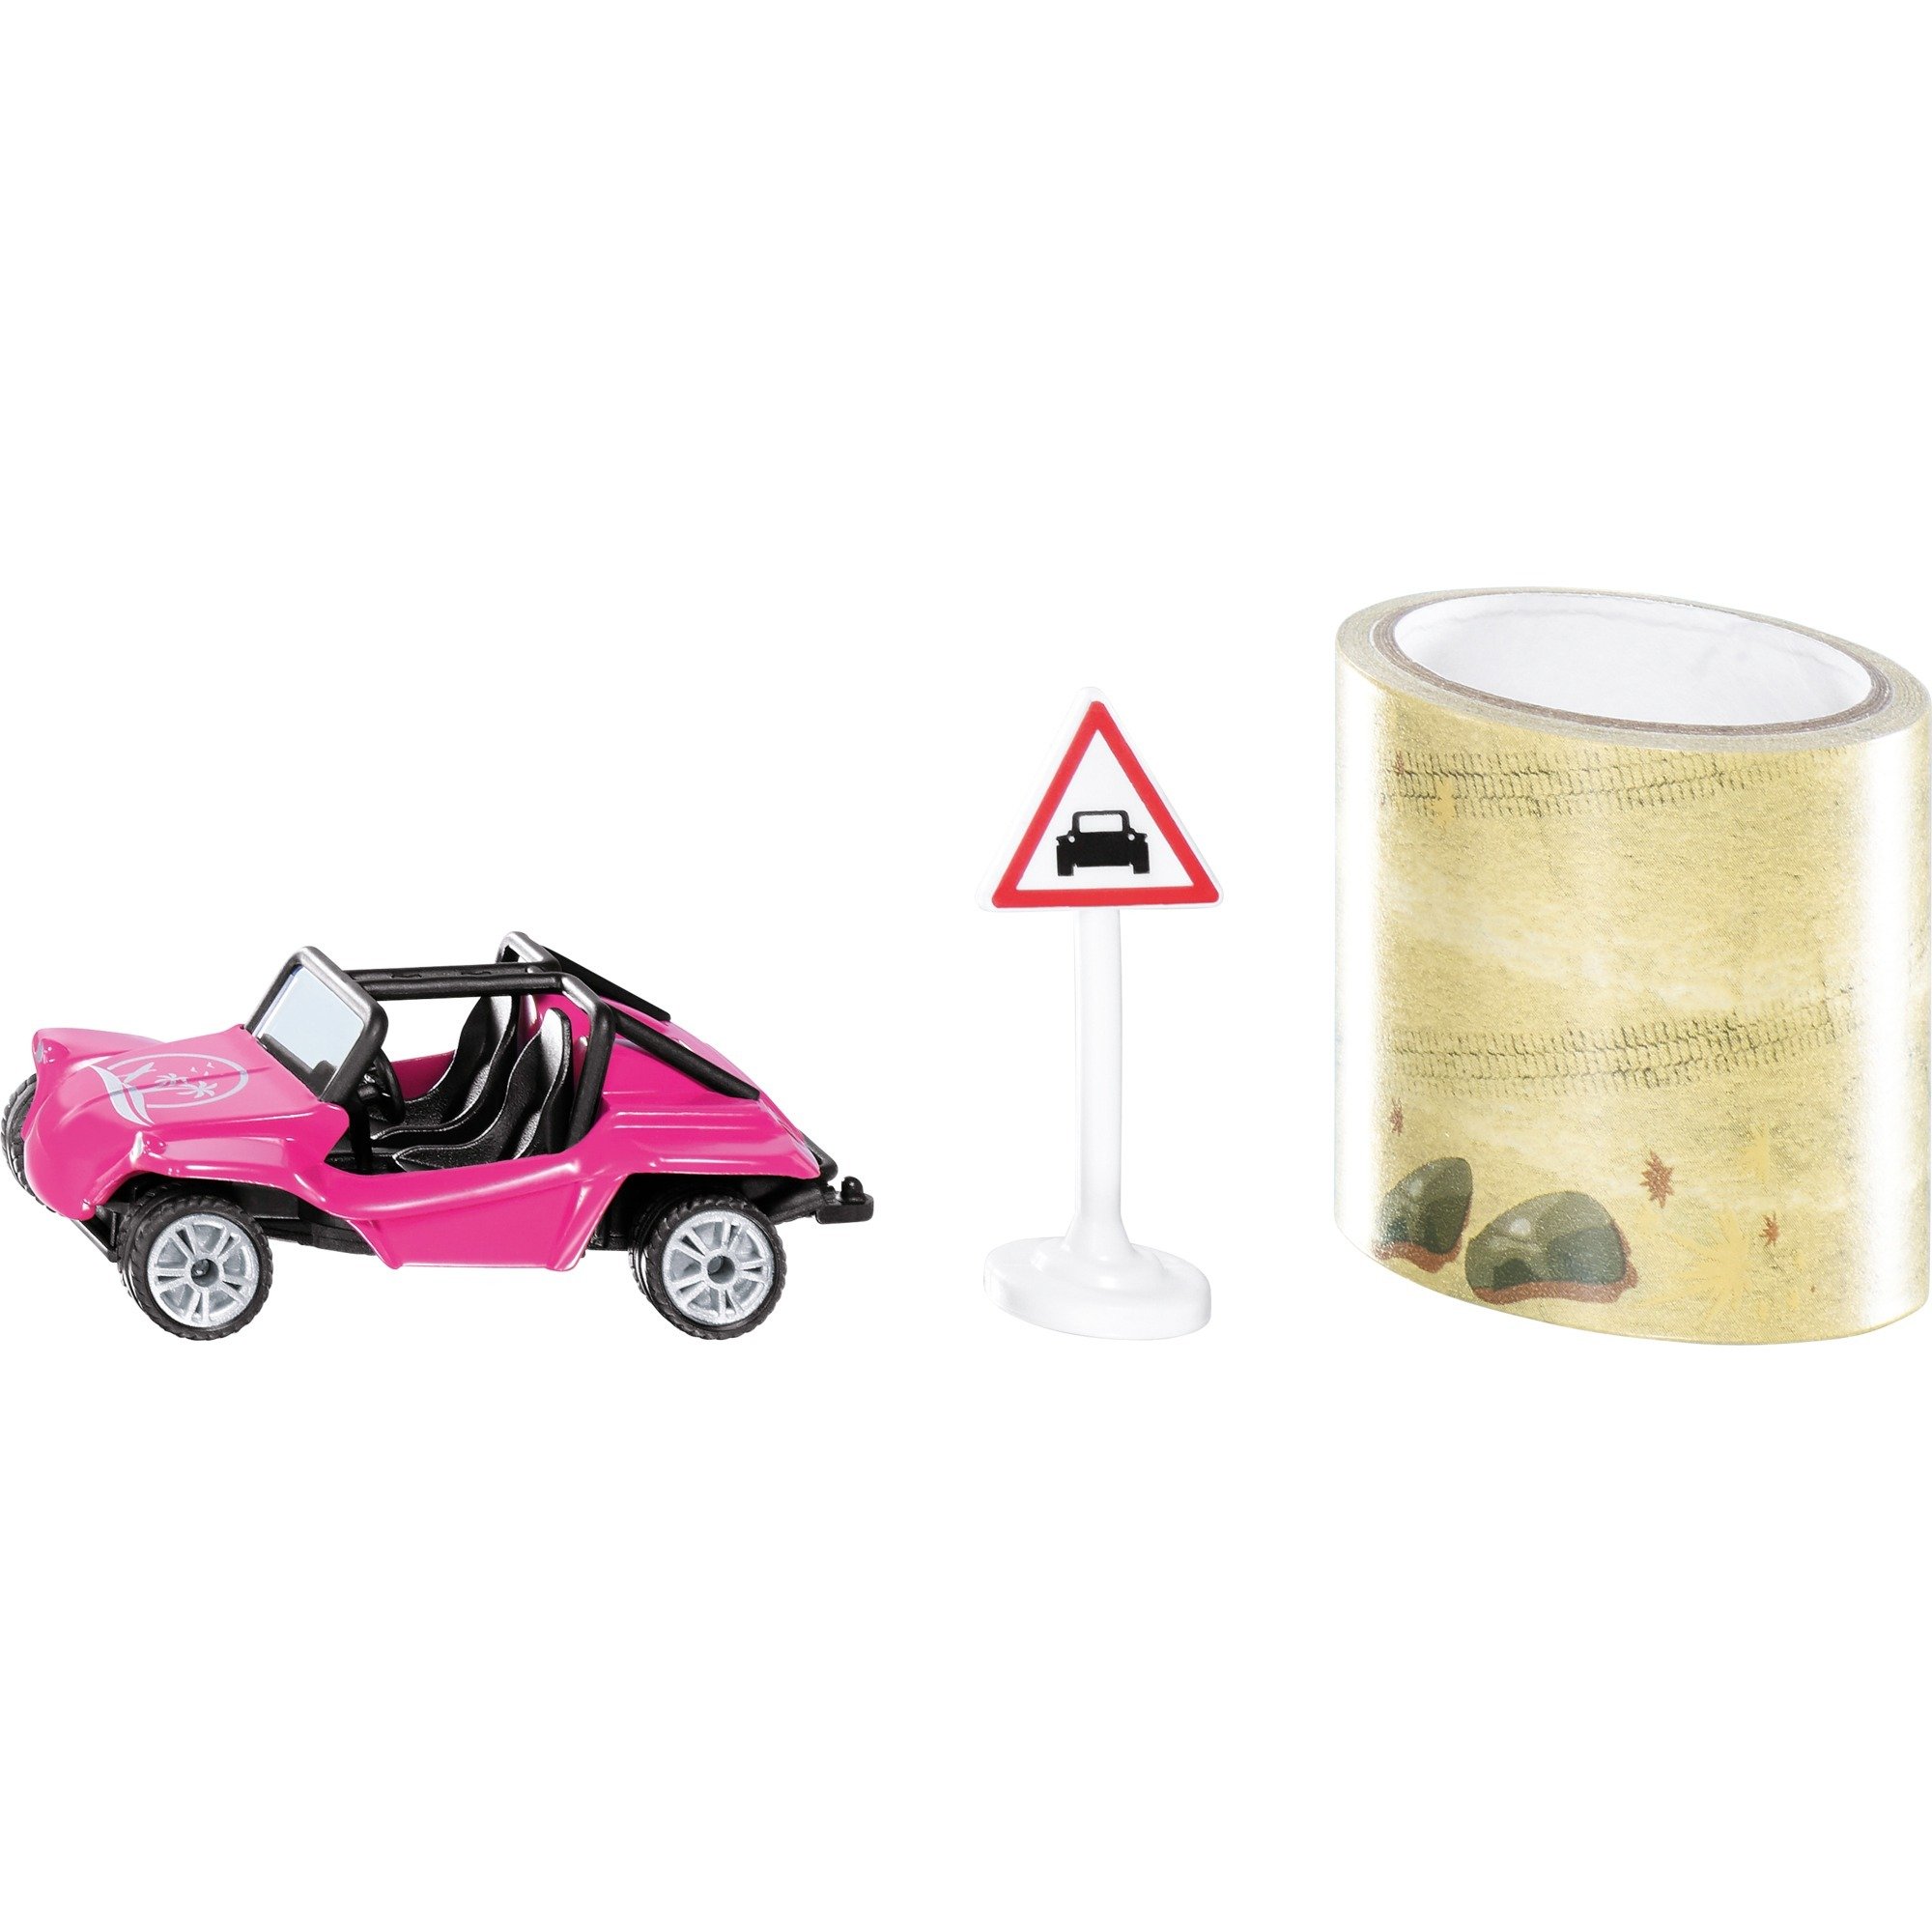 Image of Alternate - SUPER Buggy mit Tape, Modellfahrzeug online einkaufen bei Alternate